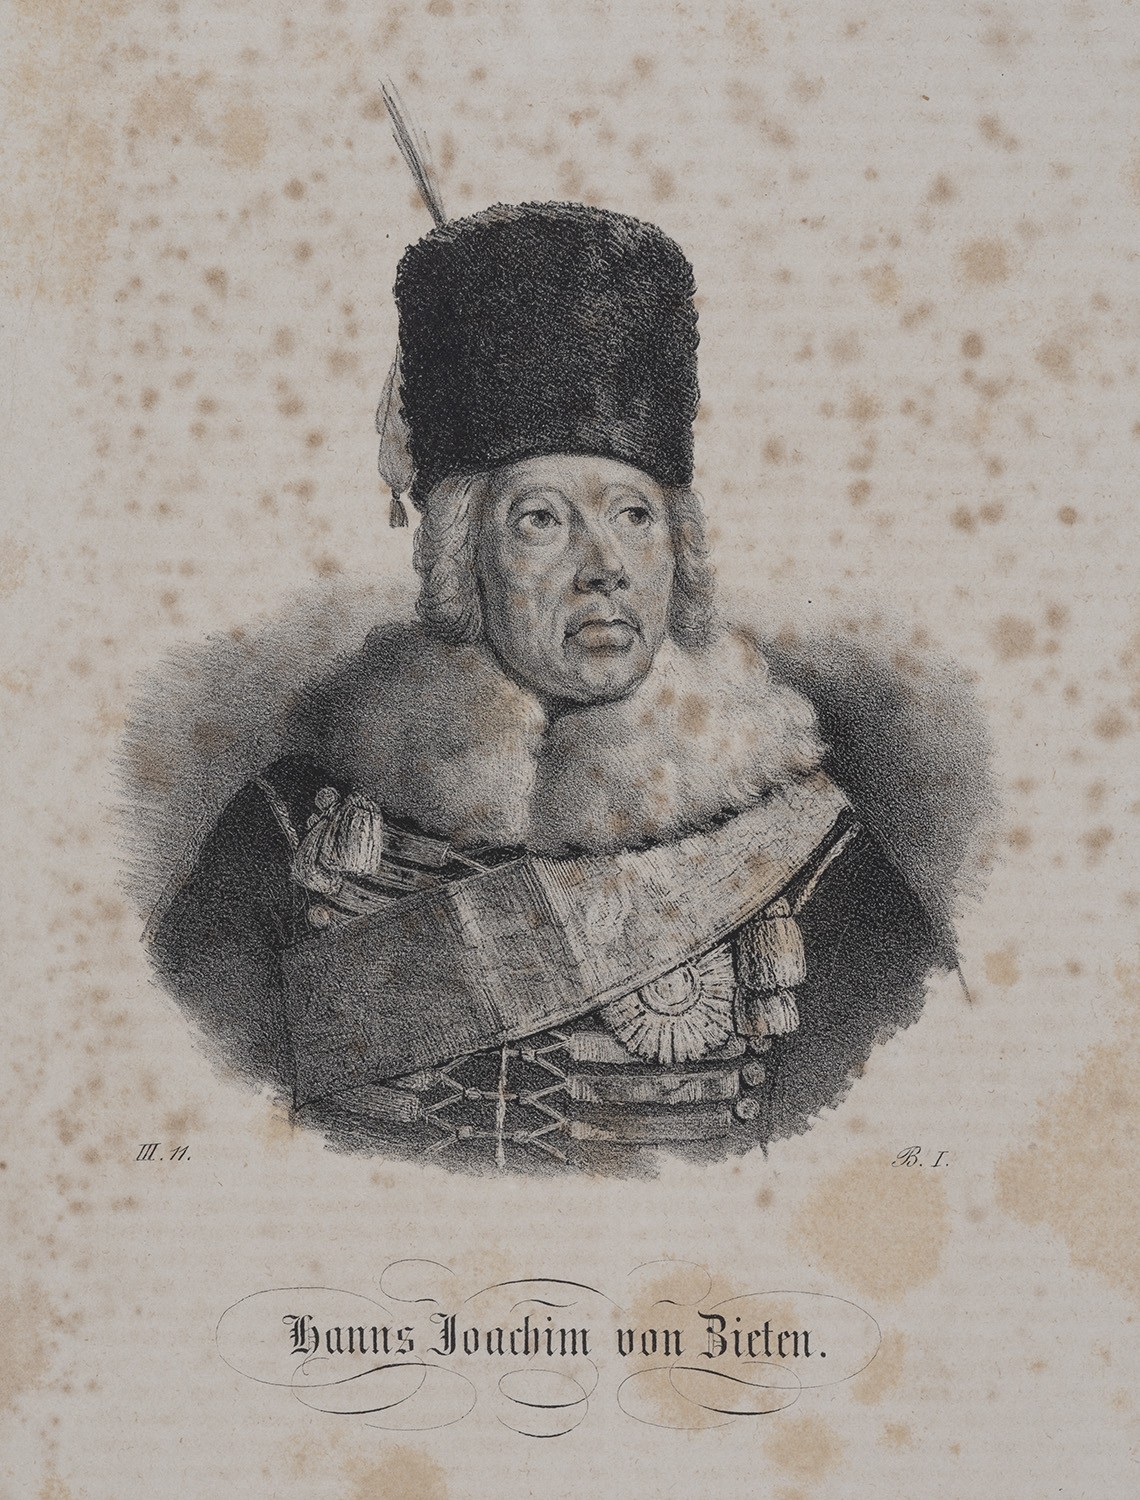 Zieten, Hans Joachim von (1699-1786), preuß. General der Kavallerie (Landesgeschichtliche Vereinigung für die Mark Brandenburg e.V., Archiv CC BY)